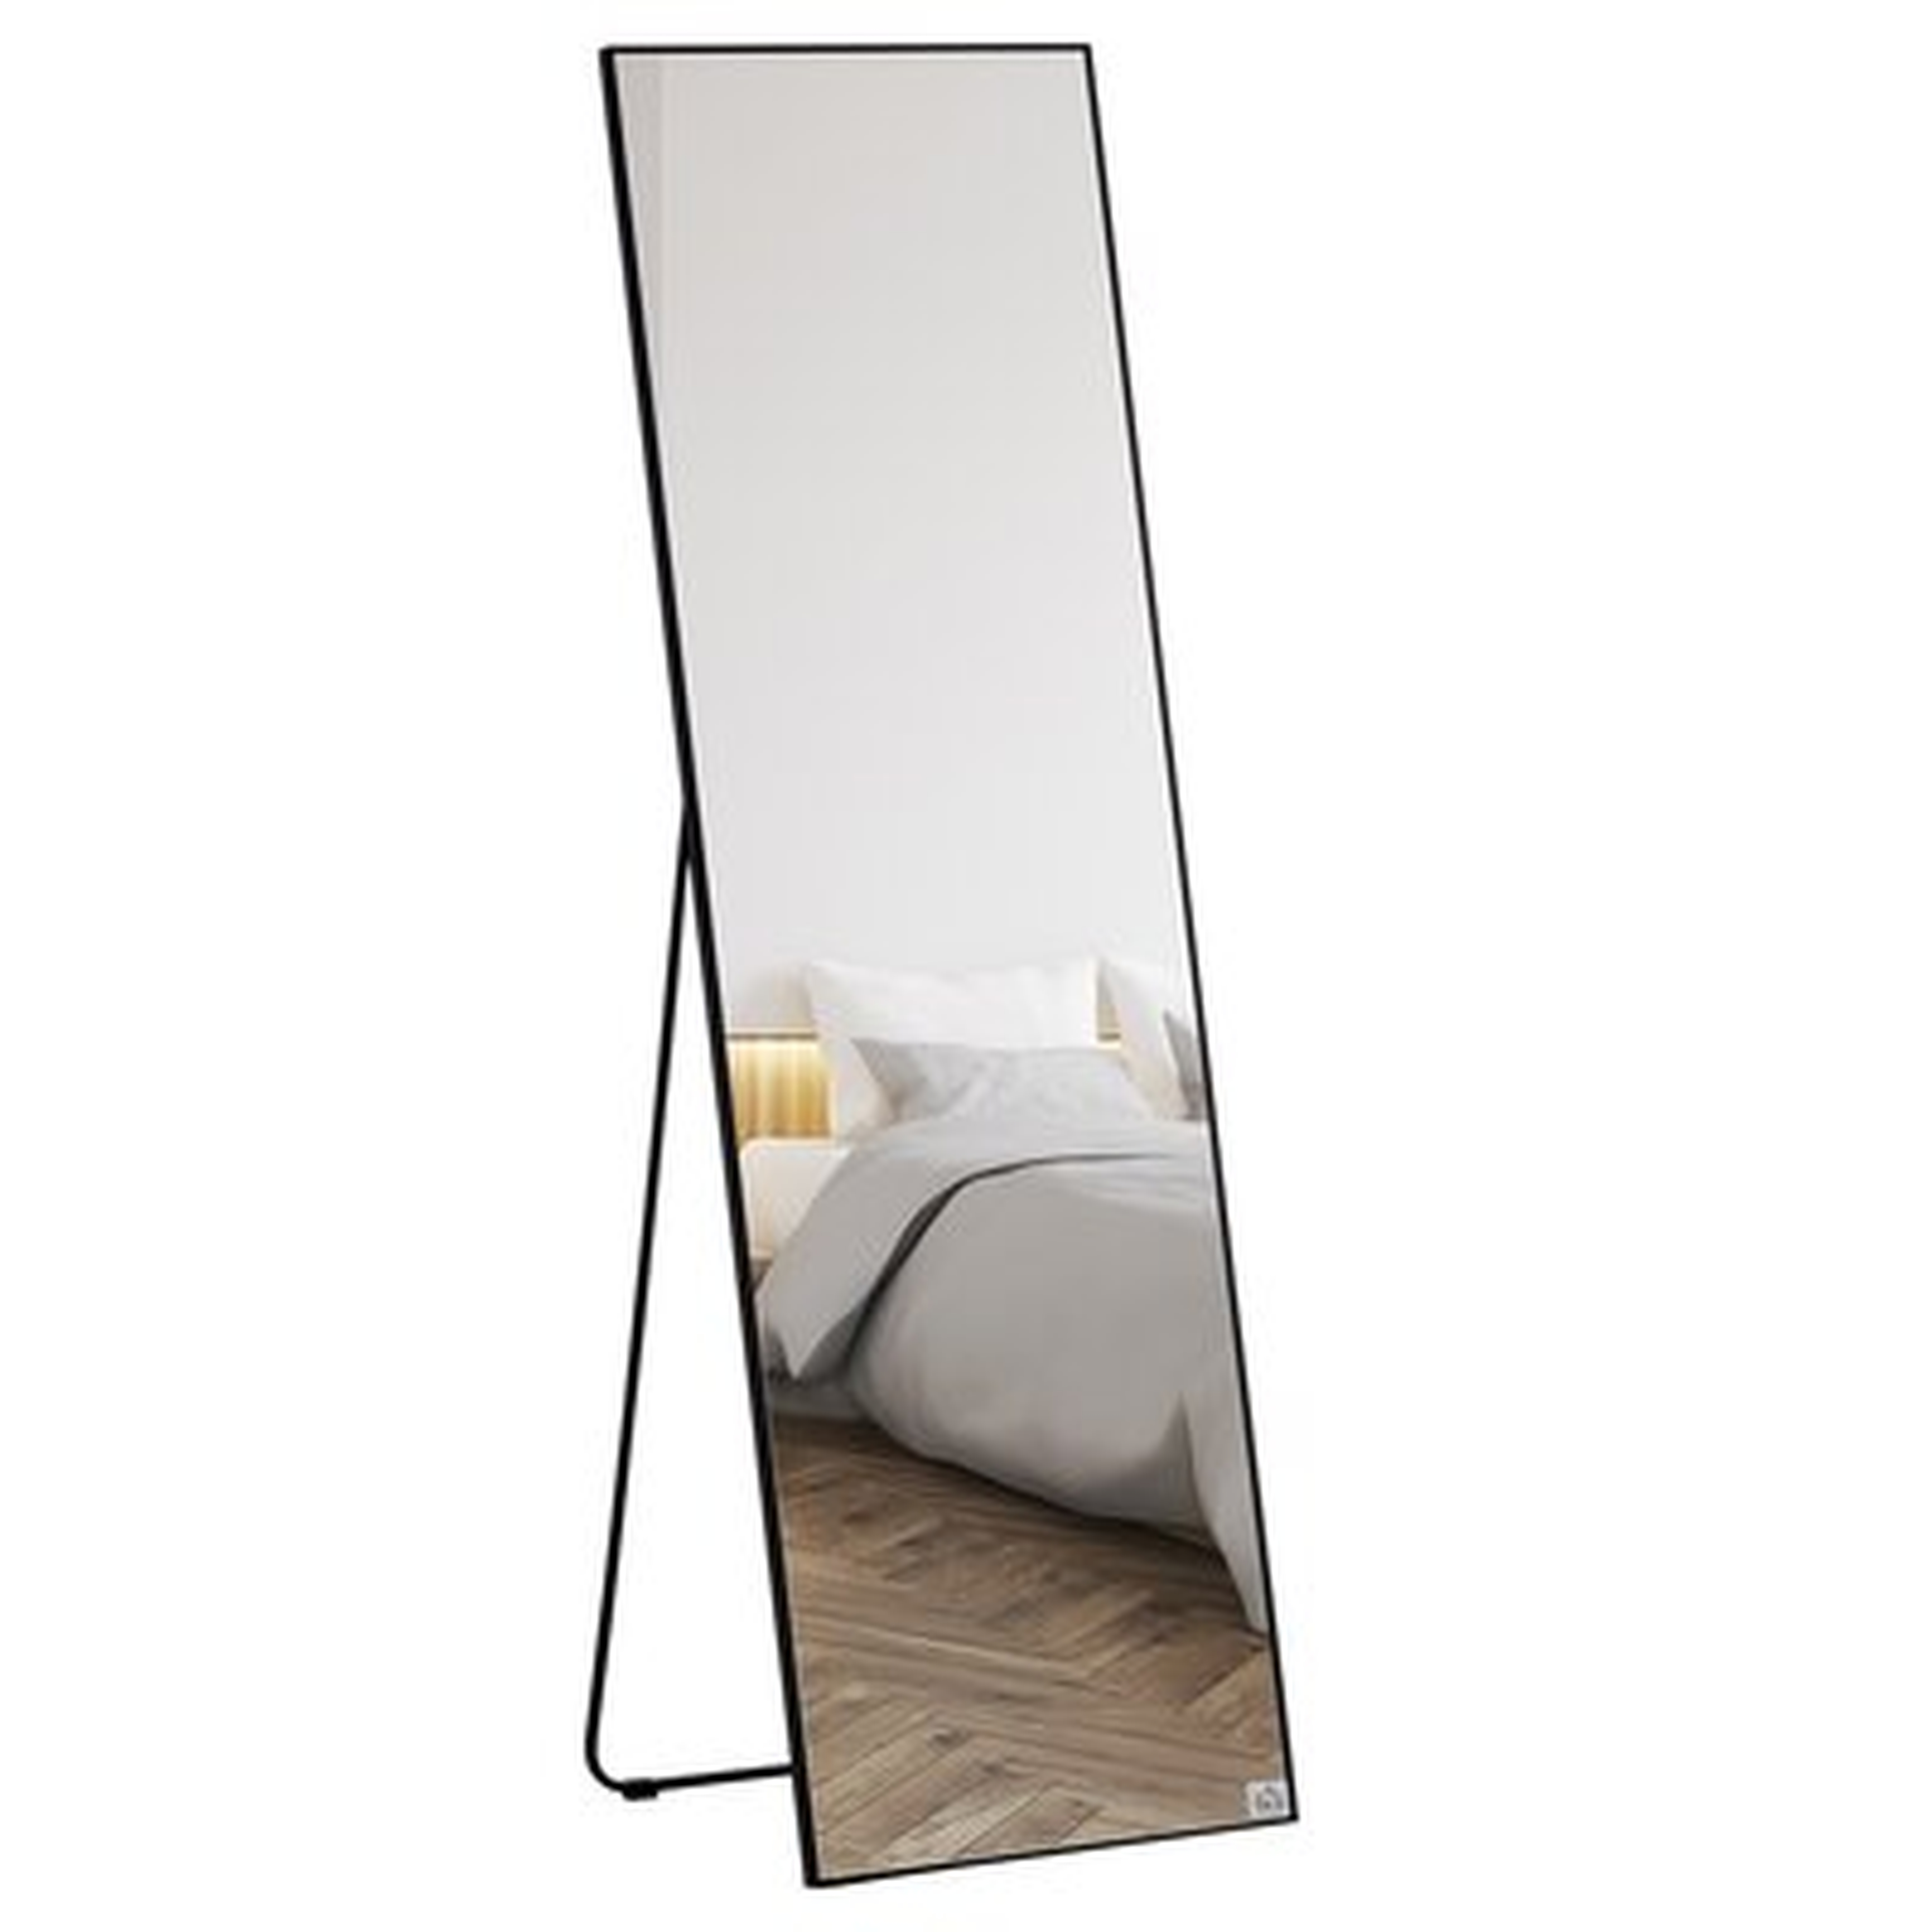 Full Length Dressing Mirror, Floor Standing Or Wall Hanging, Aluminum Alloy Framed Full Body Mirror For Bedroom, Living Room, Black - Wayfair